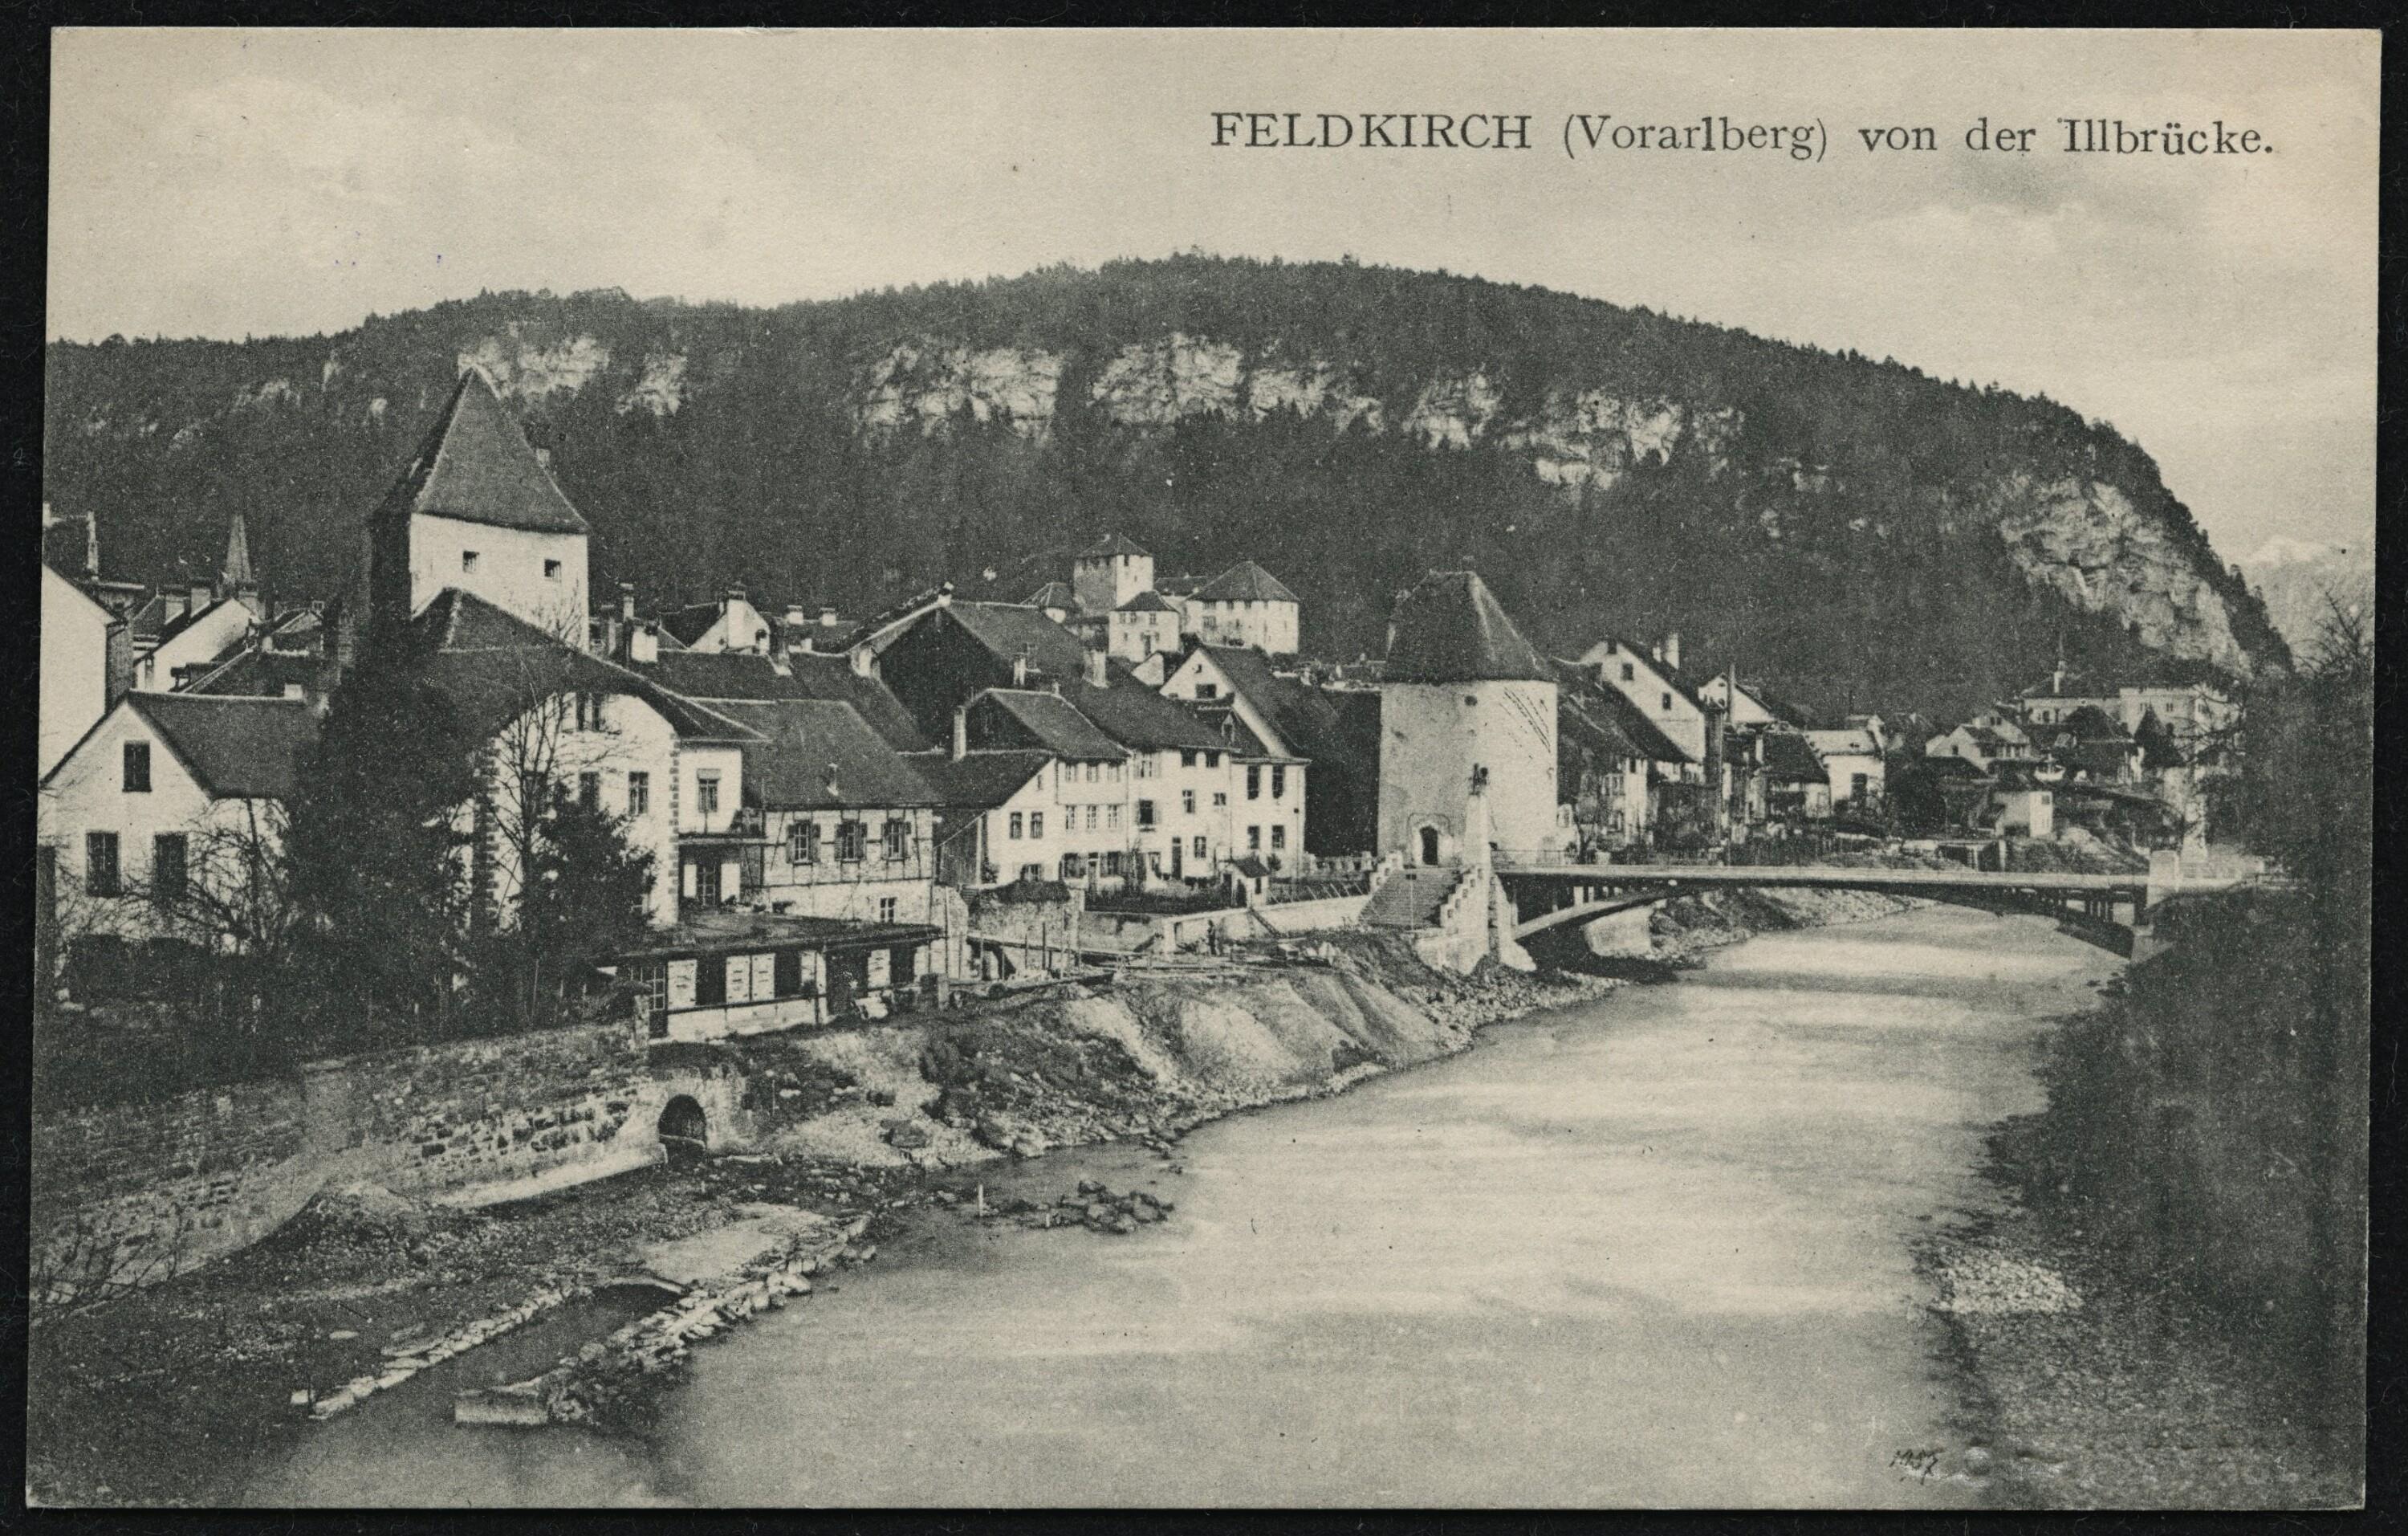 Feldkirch (Vorarlberg) von der Illbrücke></div>


    <hr>
    <div class=